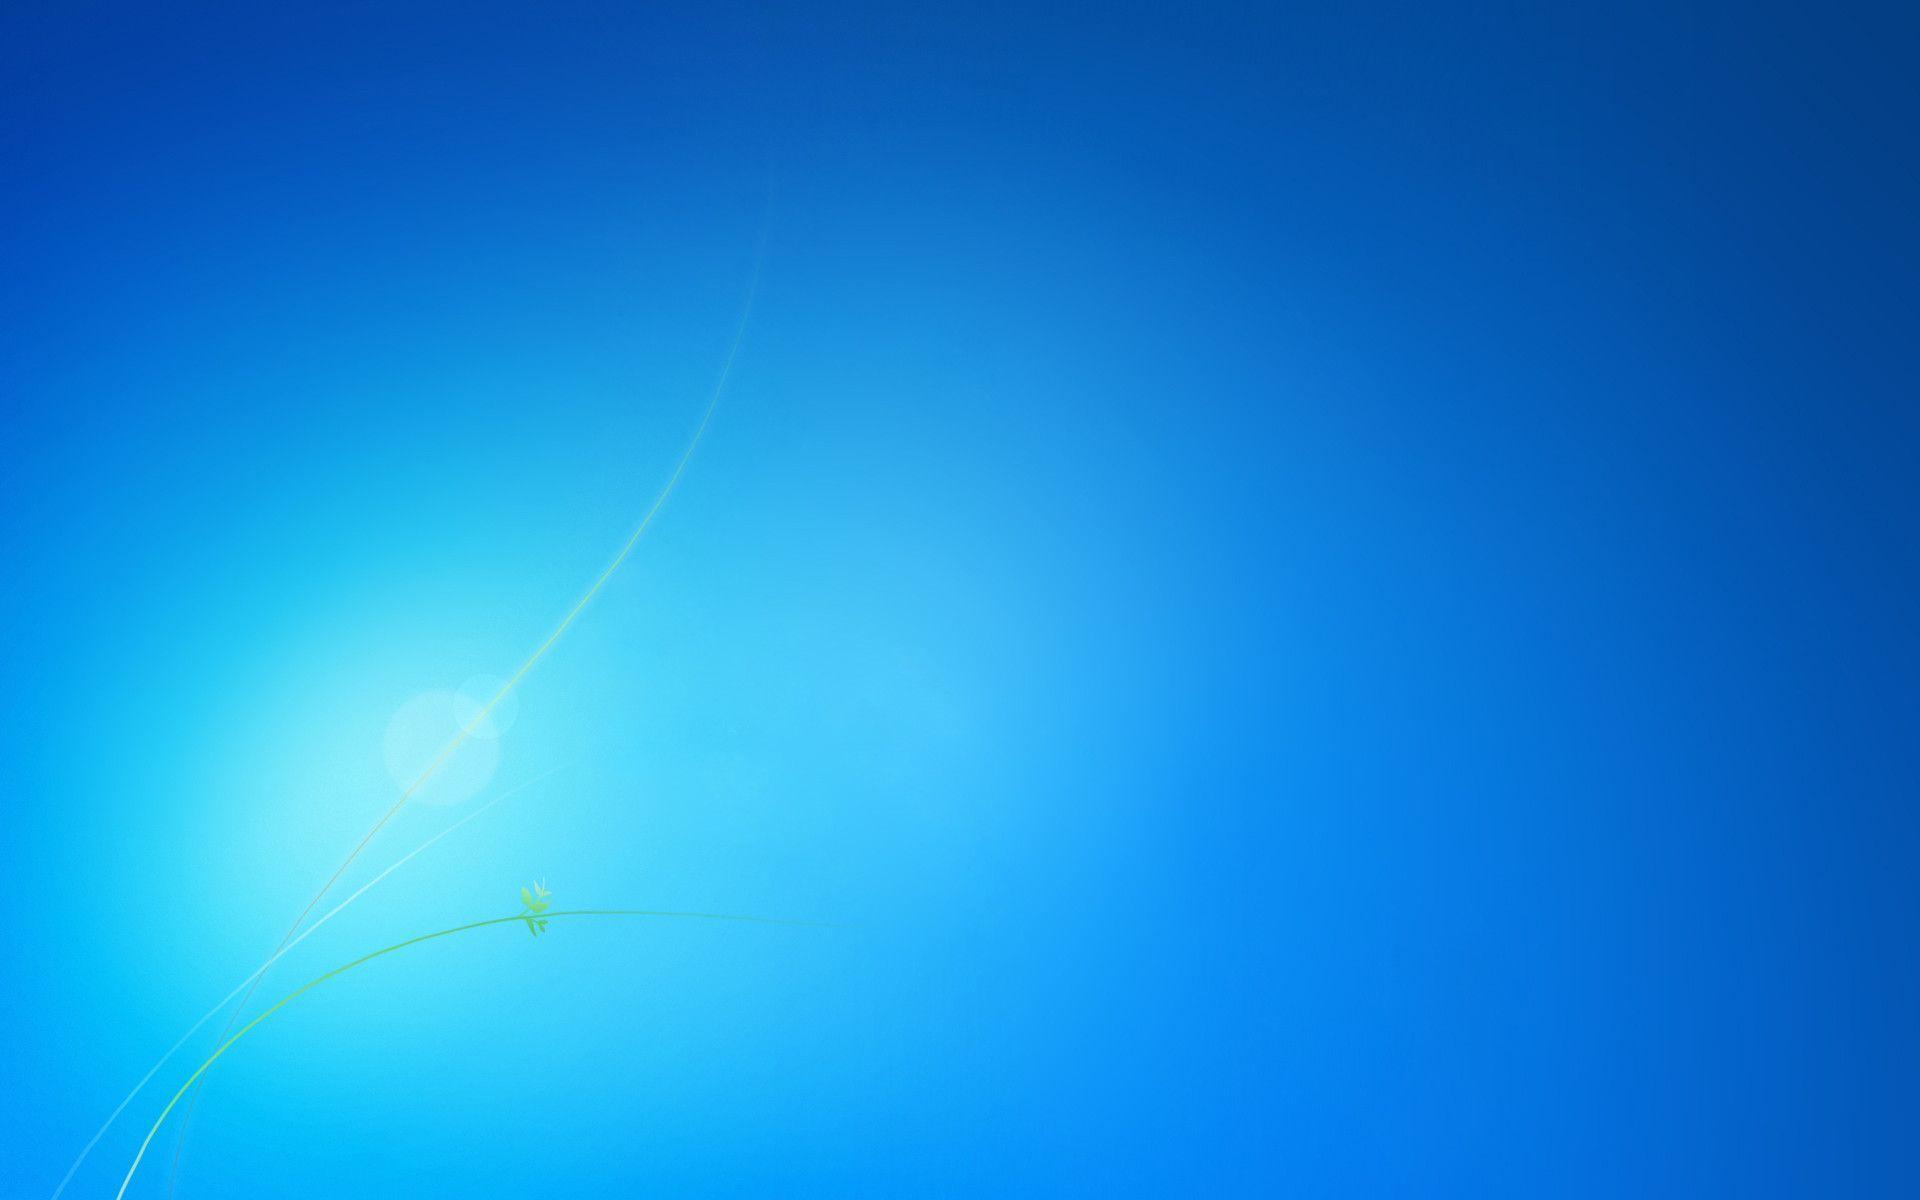 Windows 7 Blue Desktop Wallpaper 12838 High Resolution. wallpicnet